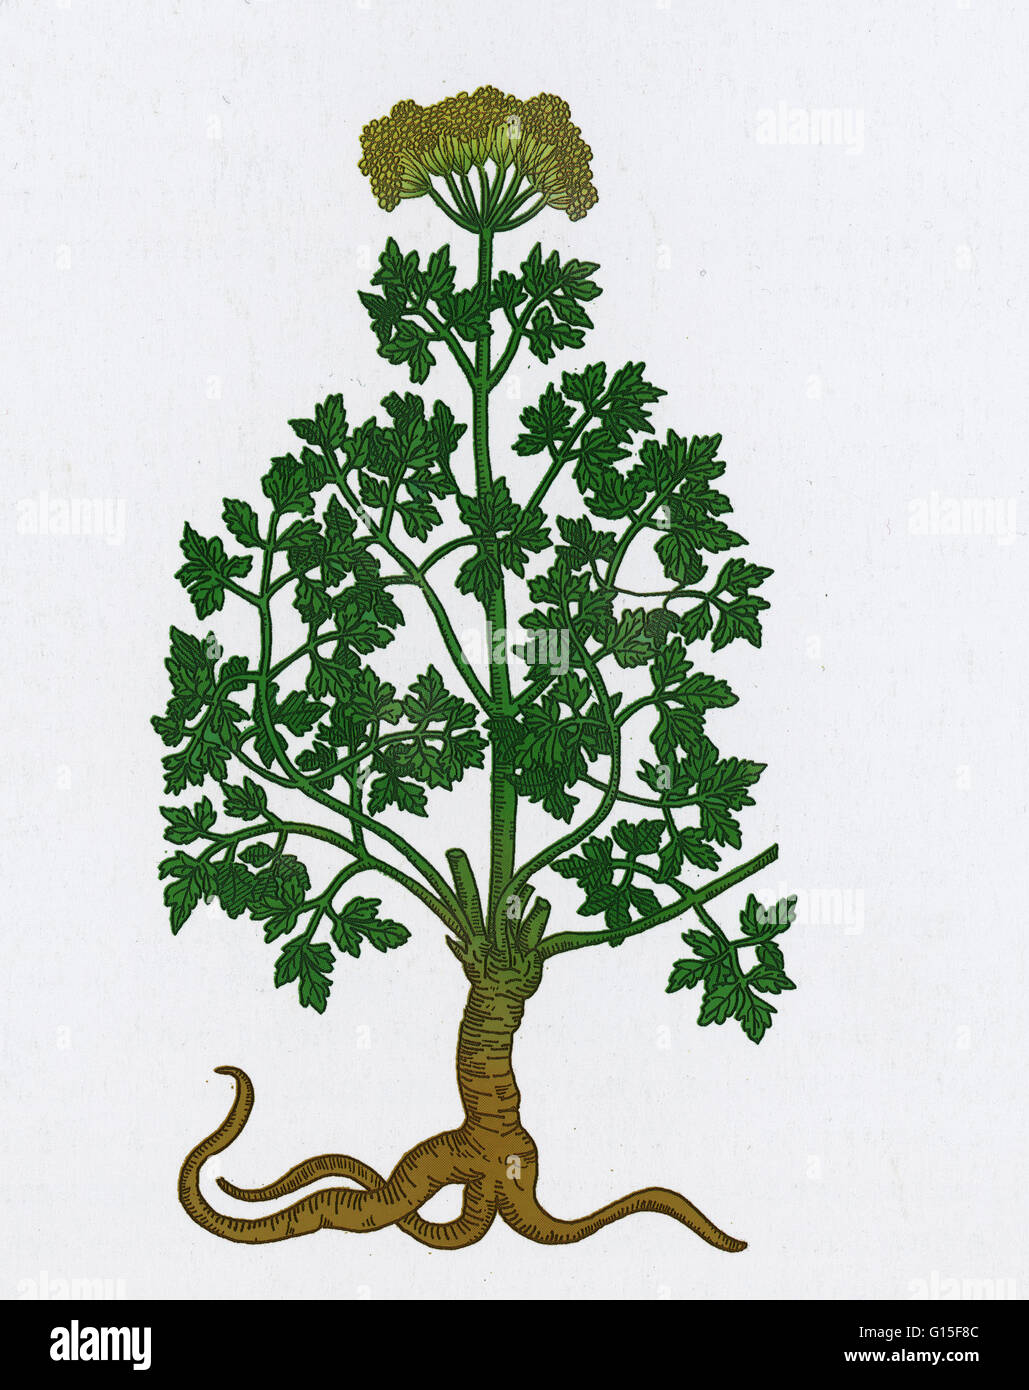 Petersilie (Petroselinum Crispum) ist eine Art von Petroselinum in der Familie Apiaceae, ursprünglich aus den zentralen Mittelmeerraum (Süd-Italien, Algerien und Tunesien), anderswo in Europa eingebürgert und kultiviert wie ein Kraut, Gewürz und ein vegetabl Stockfoto